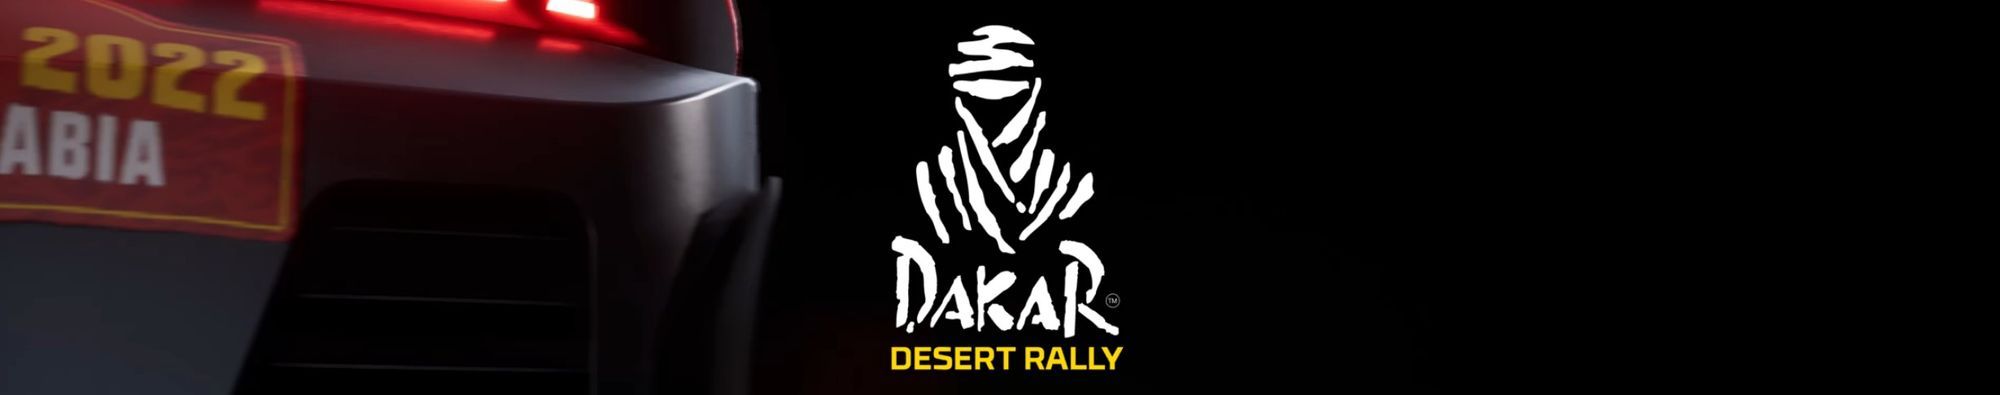 Dakar Desert Rally – The Biggest Rally Racer Ever